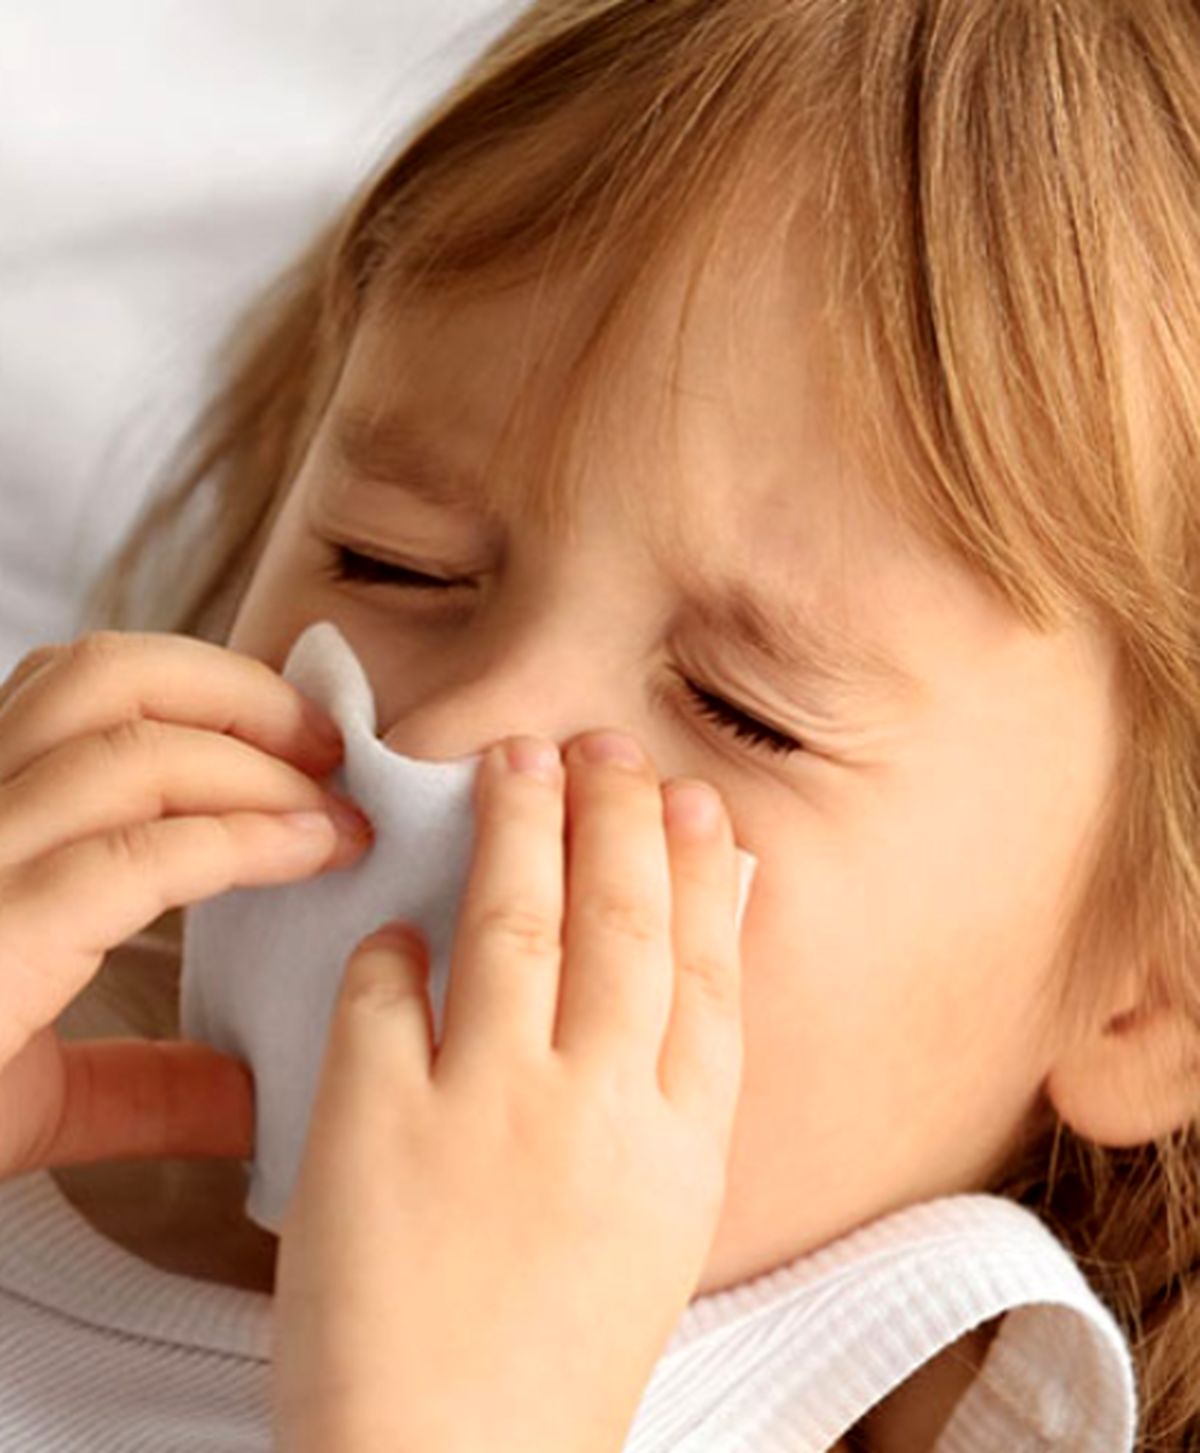 سرما خوردگی متعدد در کودکان را جدی بگیرد